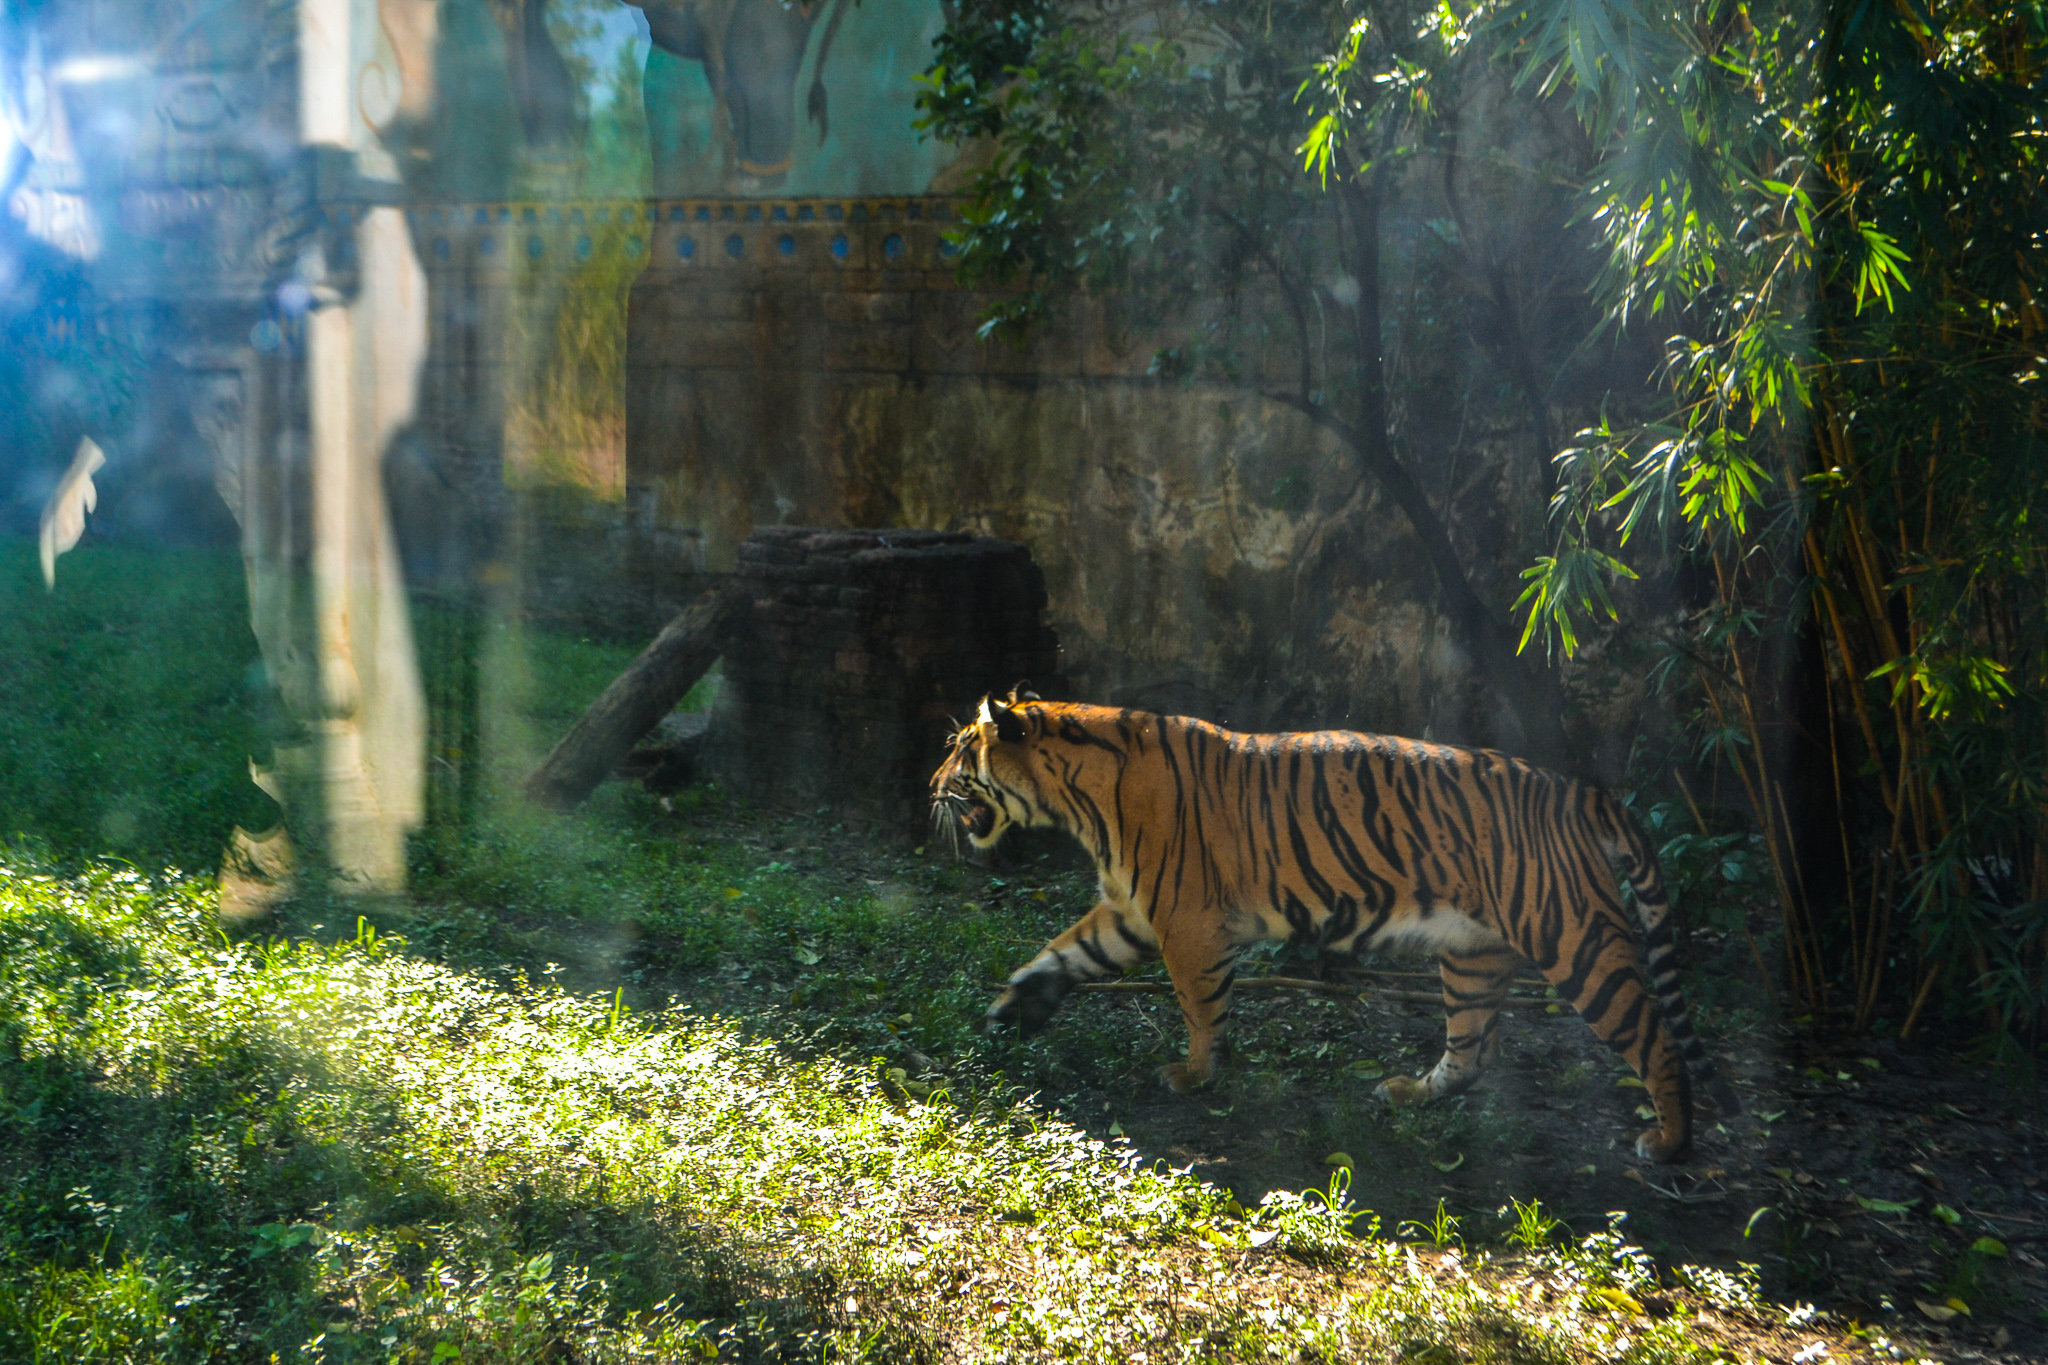 Tiger roaming in exhibit of Maharajah Jungle Trek in Animal Kingdom